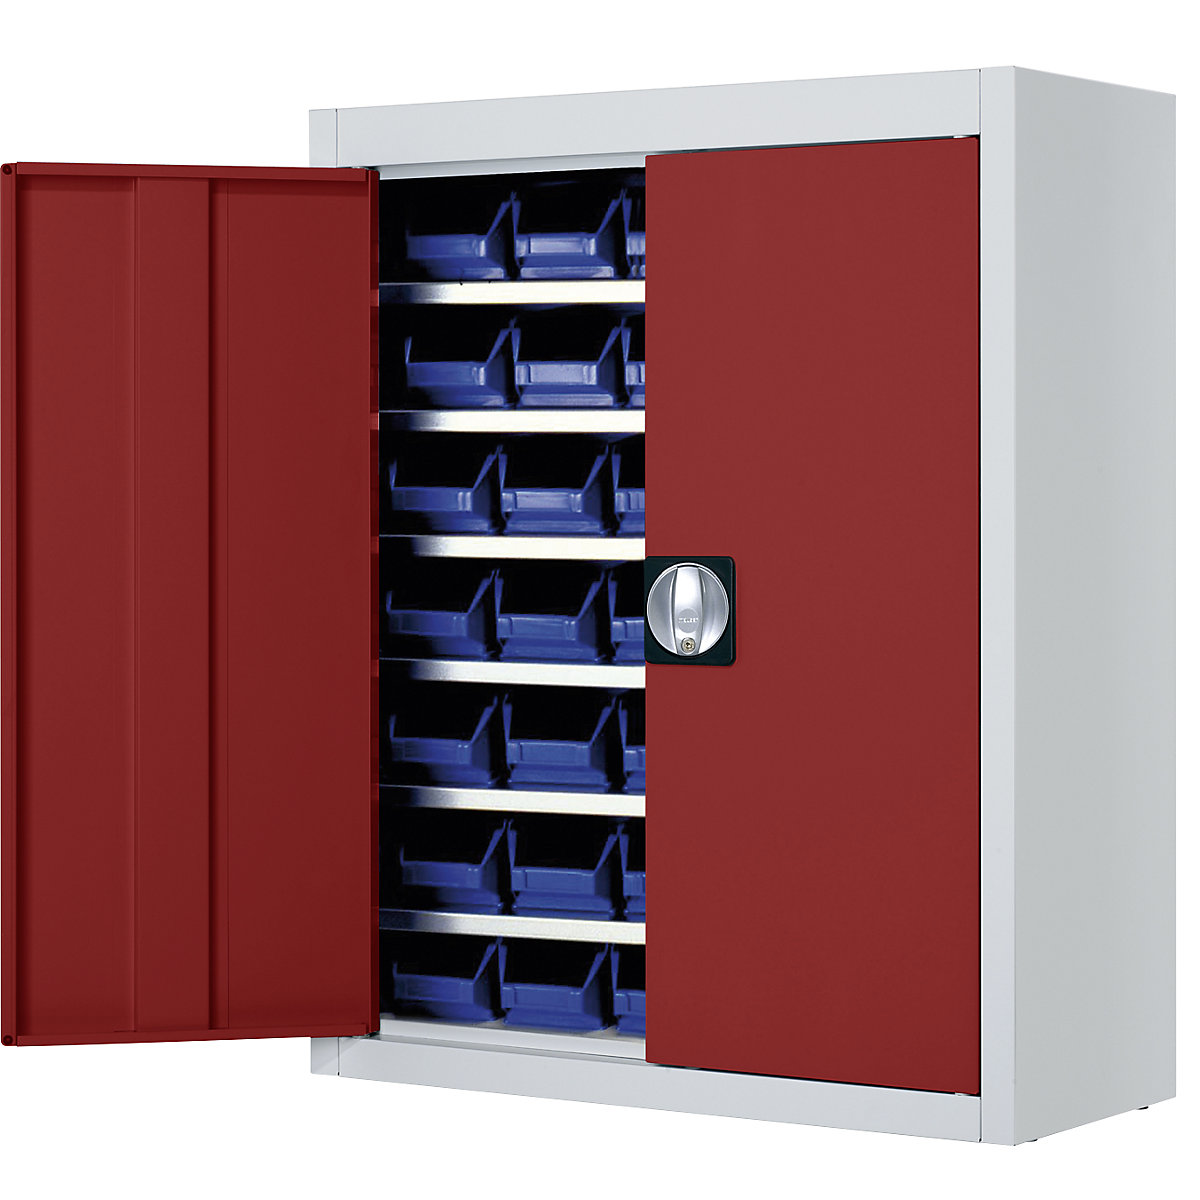 Skladišni ormar s otvorenim skladišnim kutijama – mauser, VxŠxD 820 x 680 x 280 mm, u dvije boje, korpus u sivoj boji, vrata u crvenoj boji, 42 kutije, od 3 kom.-4